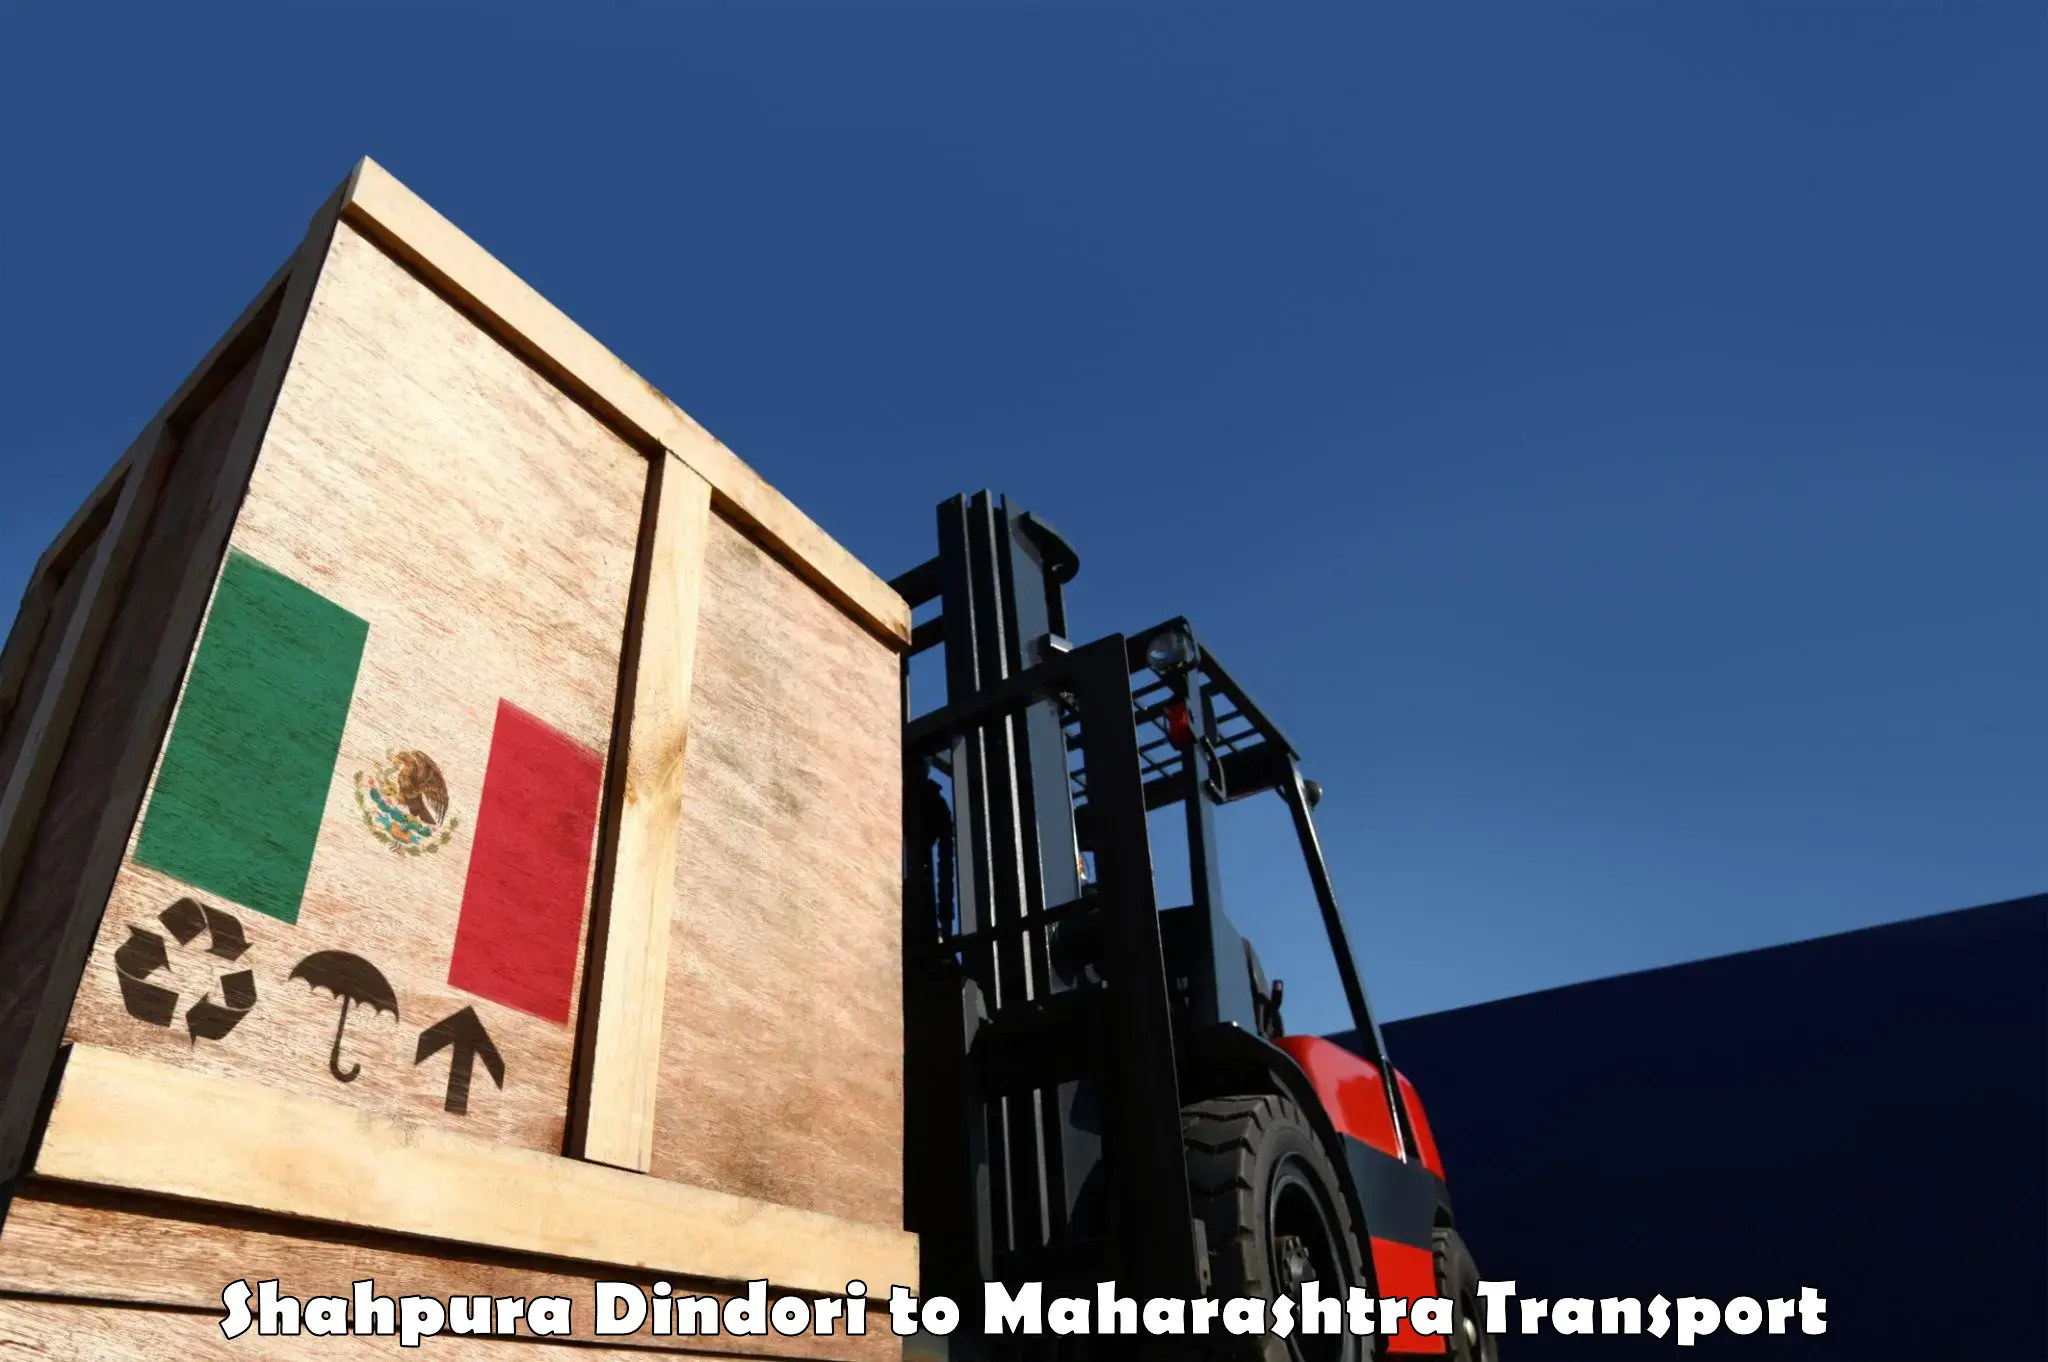 Transport services Shahpura Dindori to Talasari